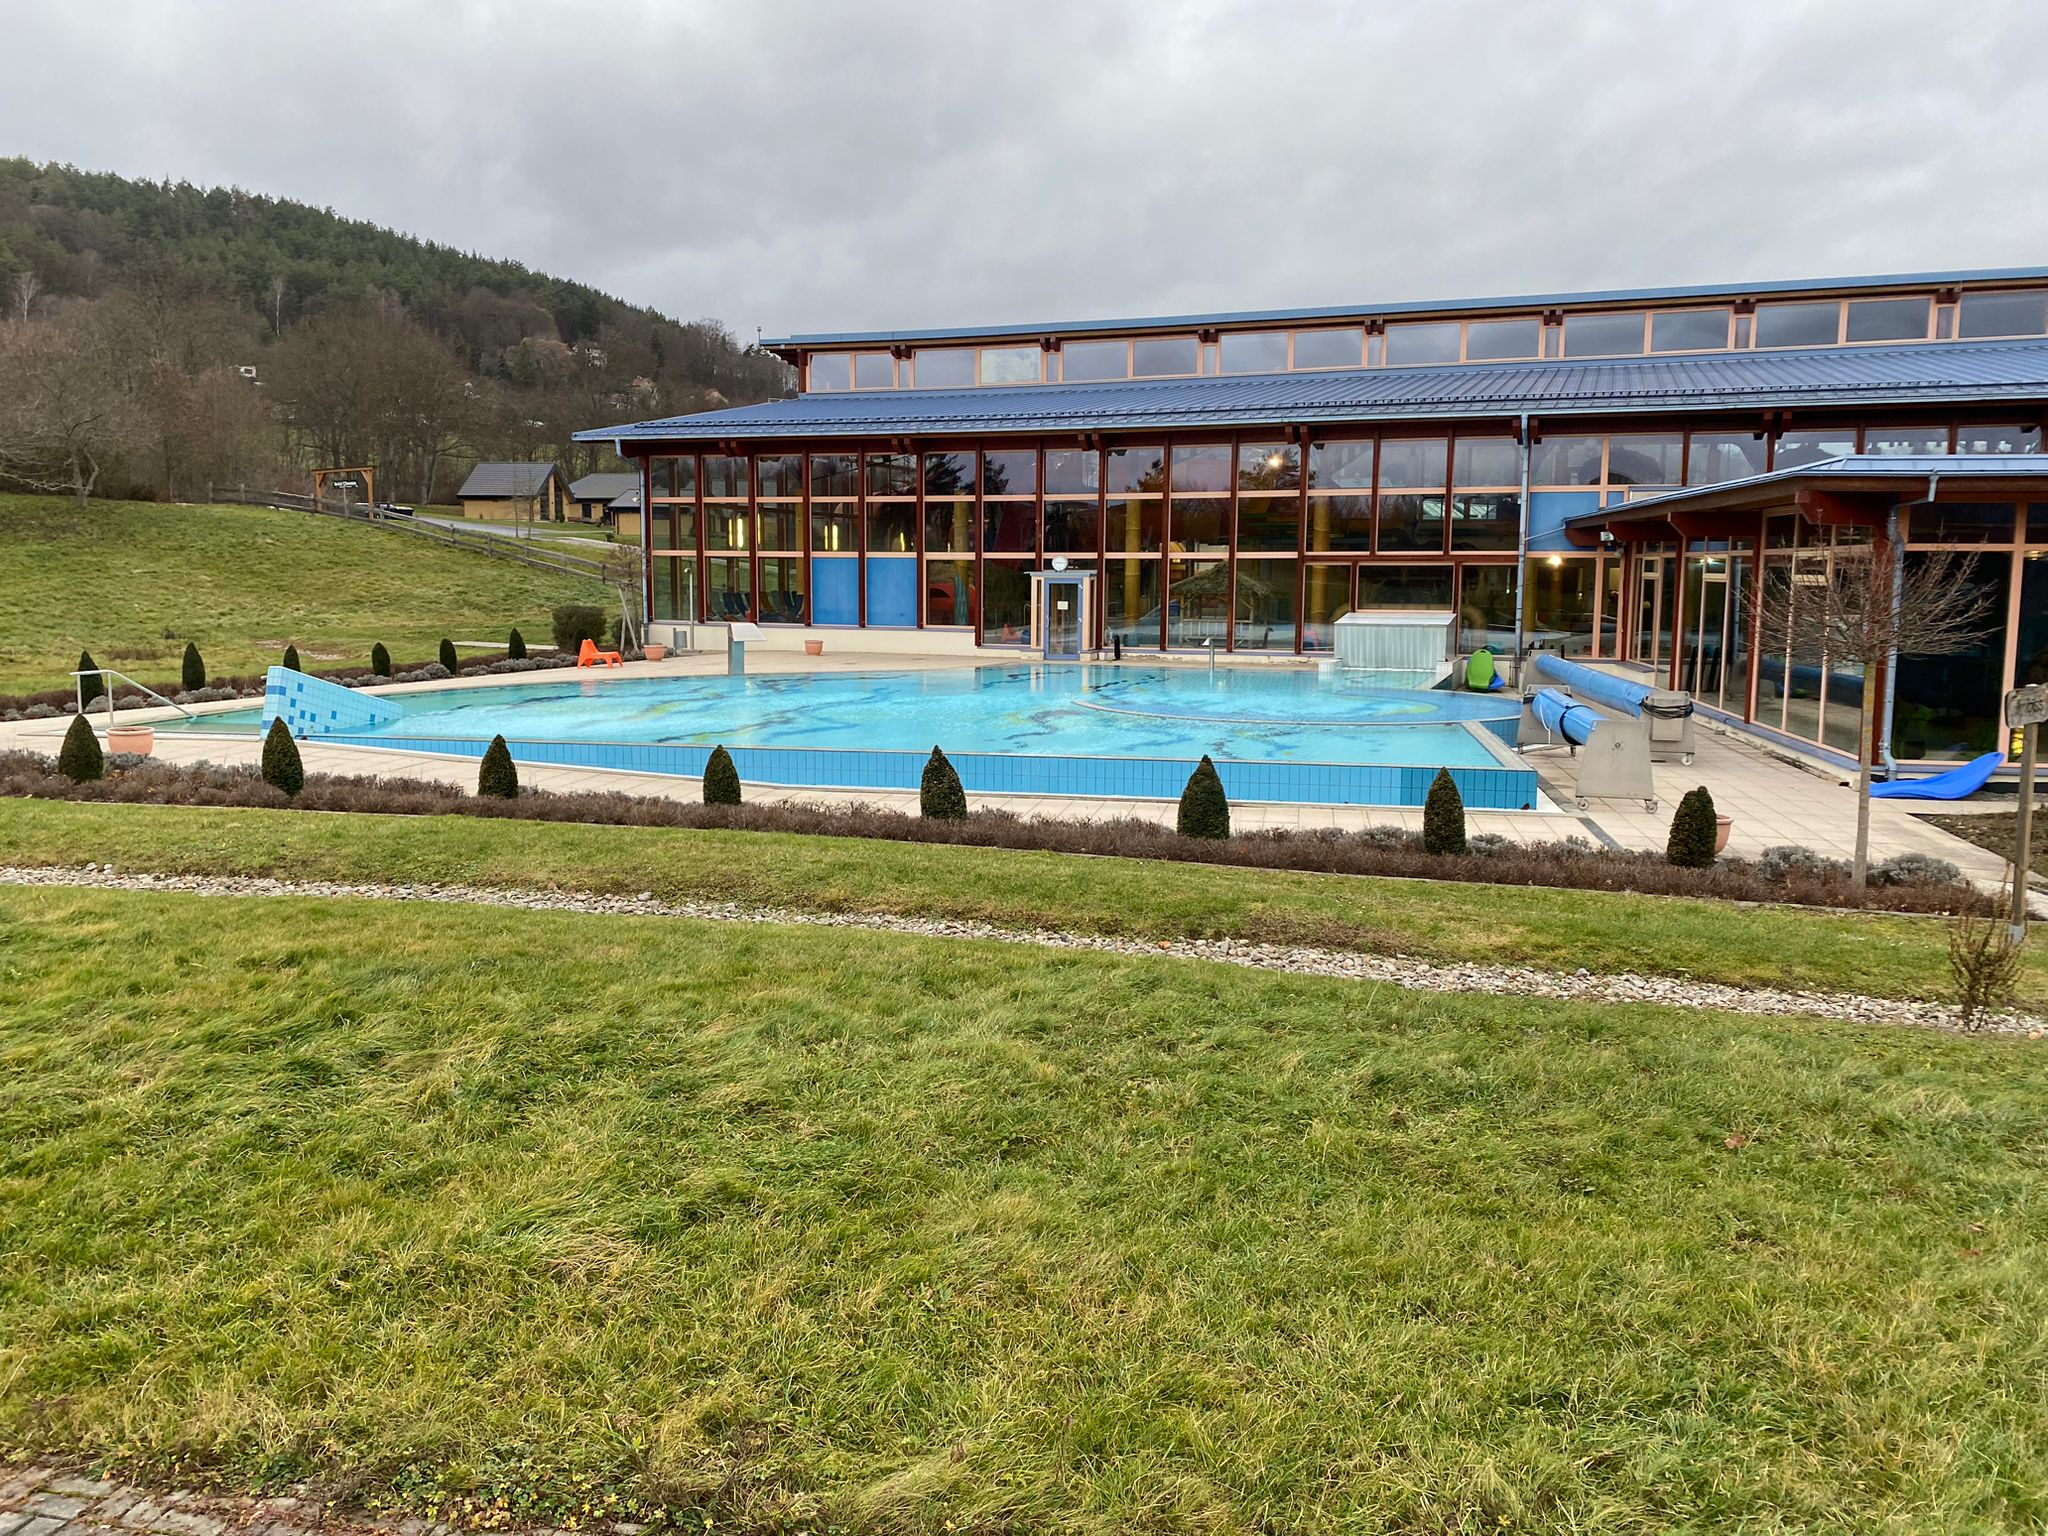 Das Bild zeigt das Außenbecken eines Schwimmbads. Im Hintergrund ist ein verglastes Gebäude zu sehen.